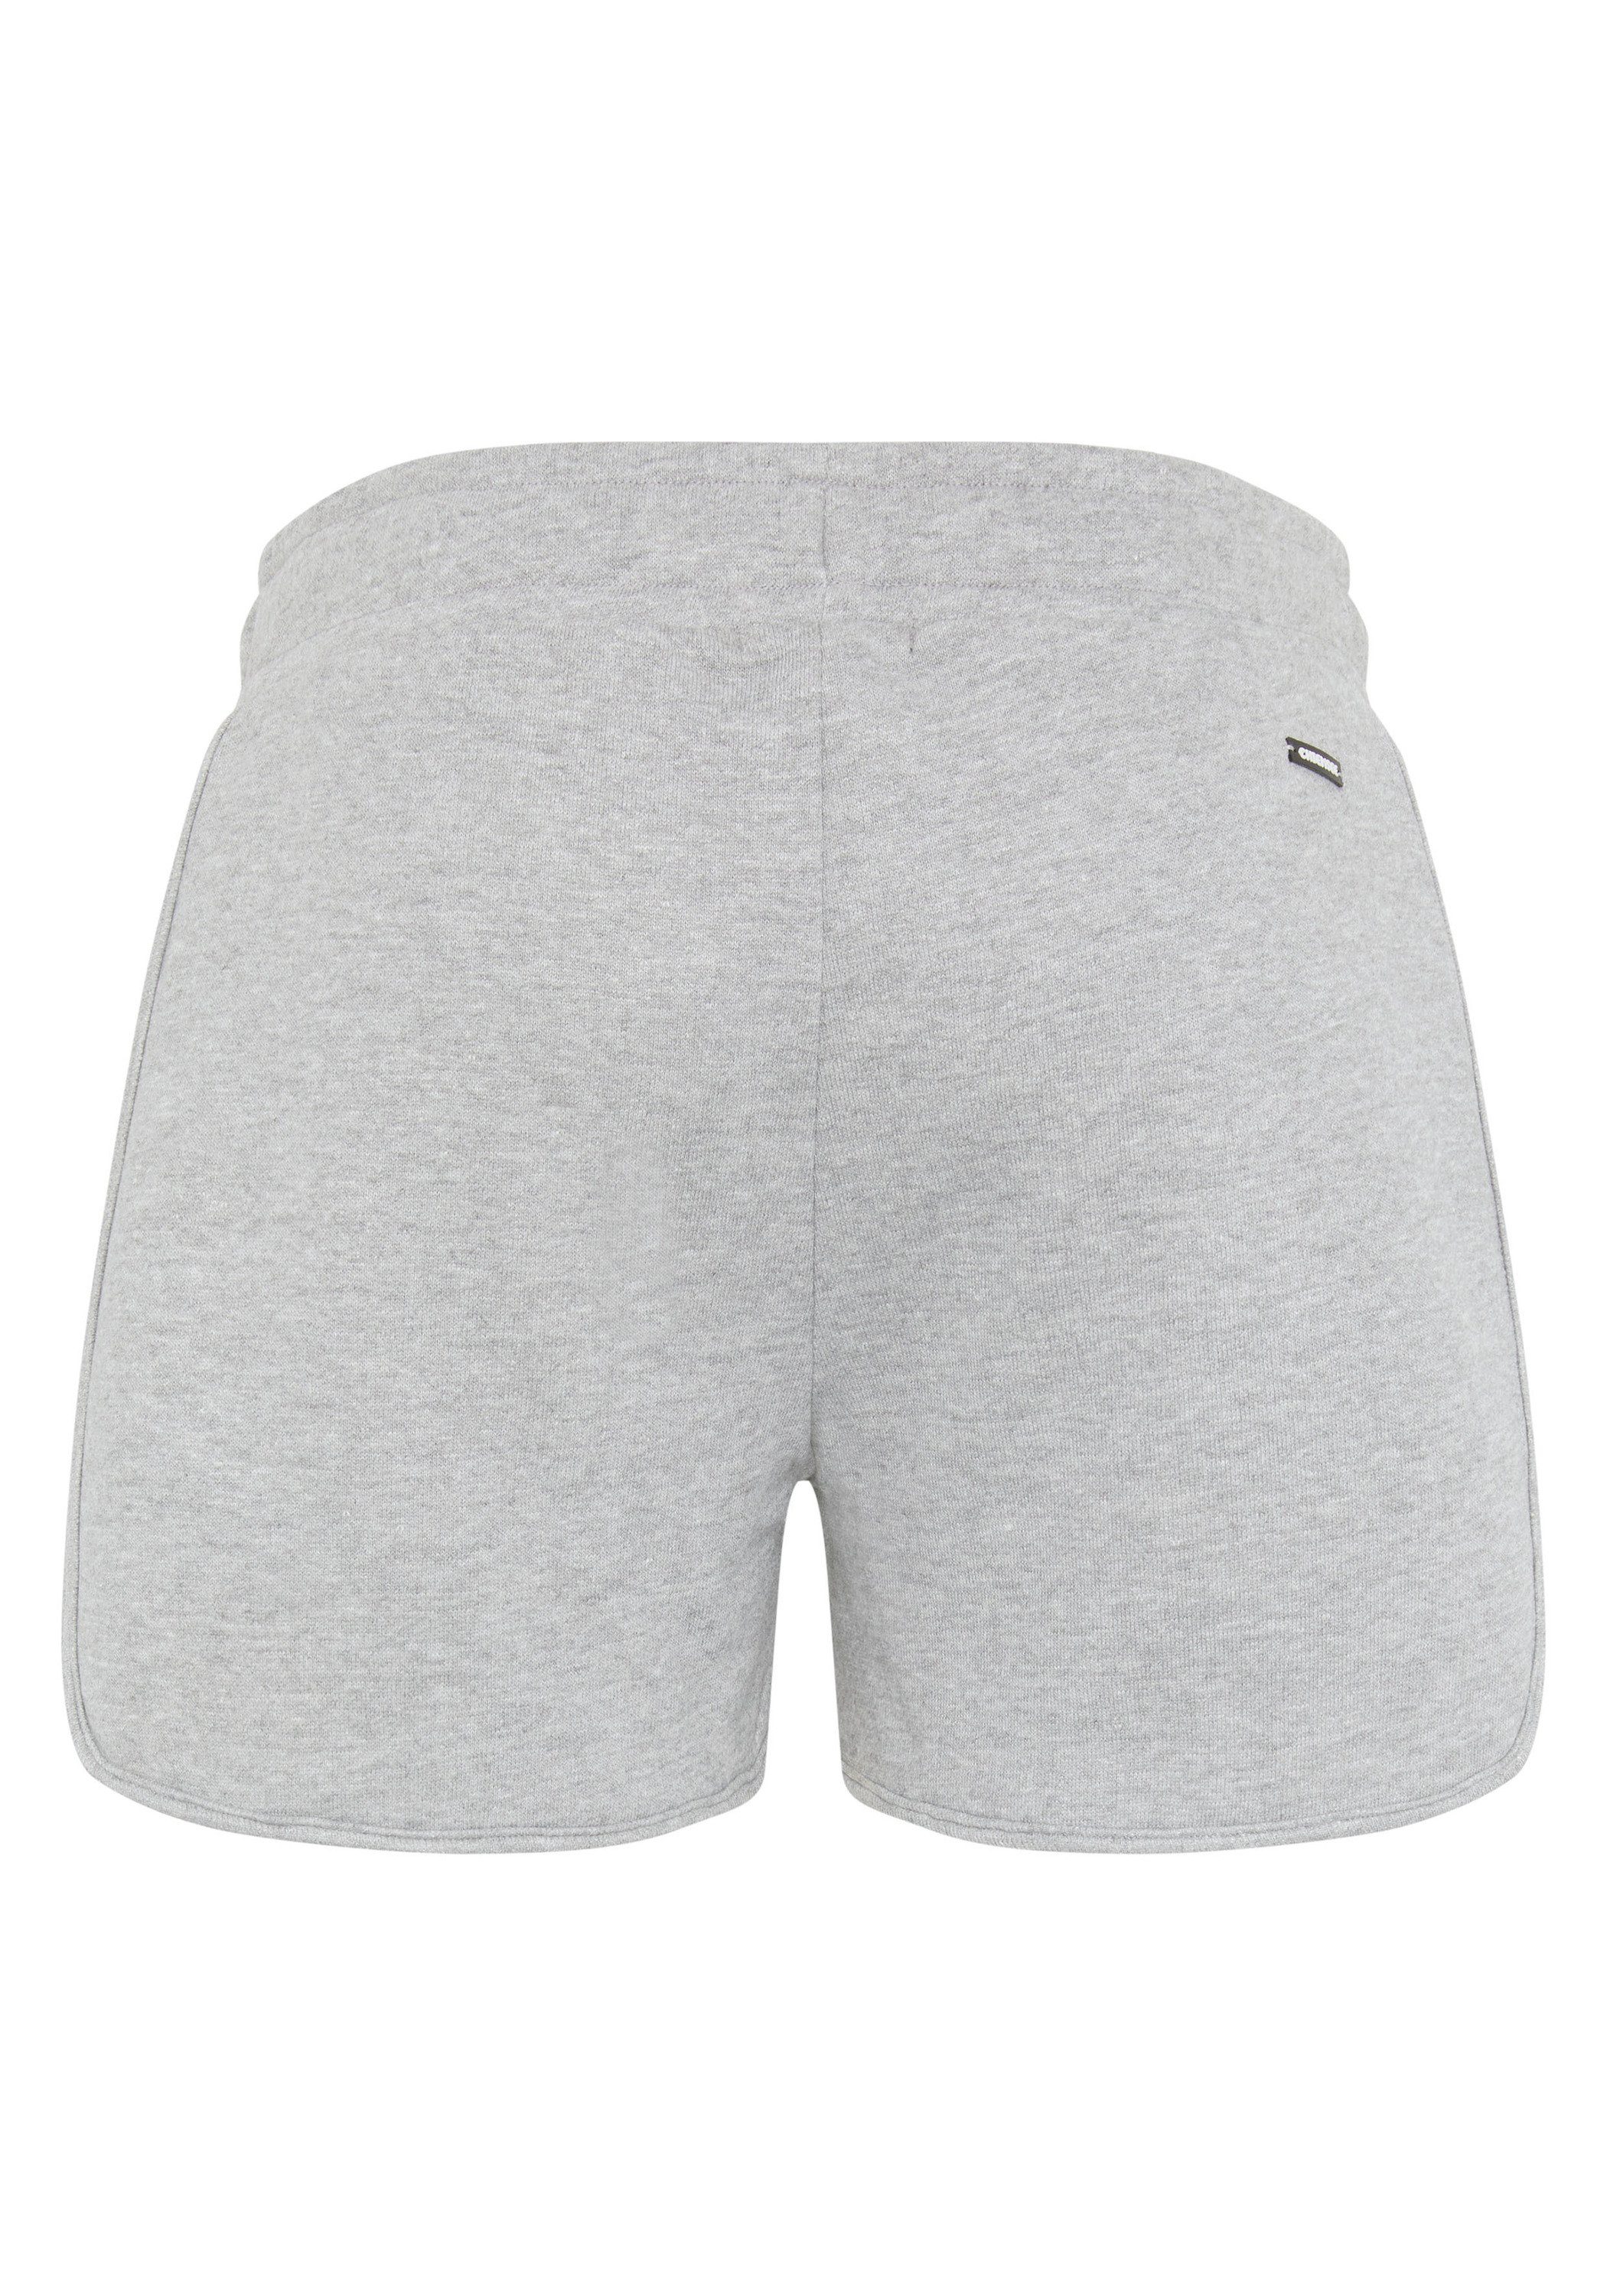 breitem Neutral 1 Melange Chiemsee Gray Sweat-Shorts Sweatshorts mit Bund